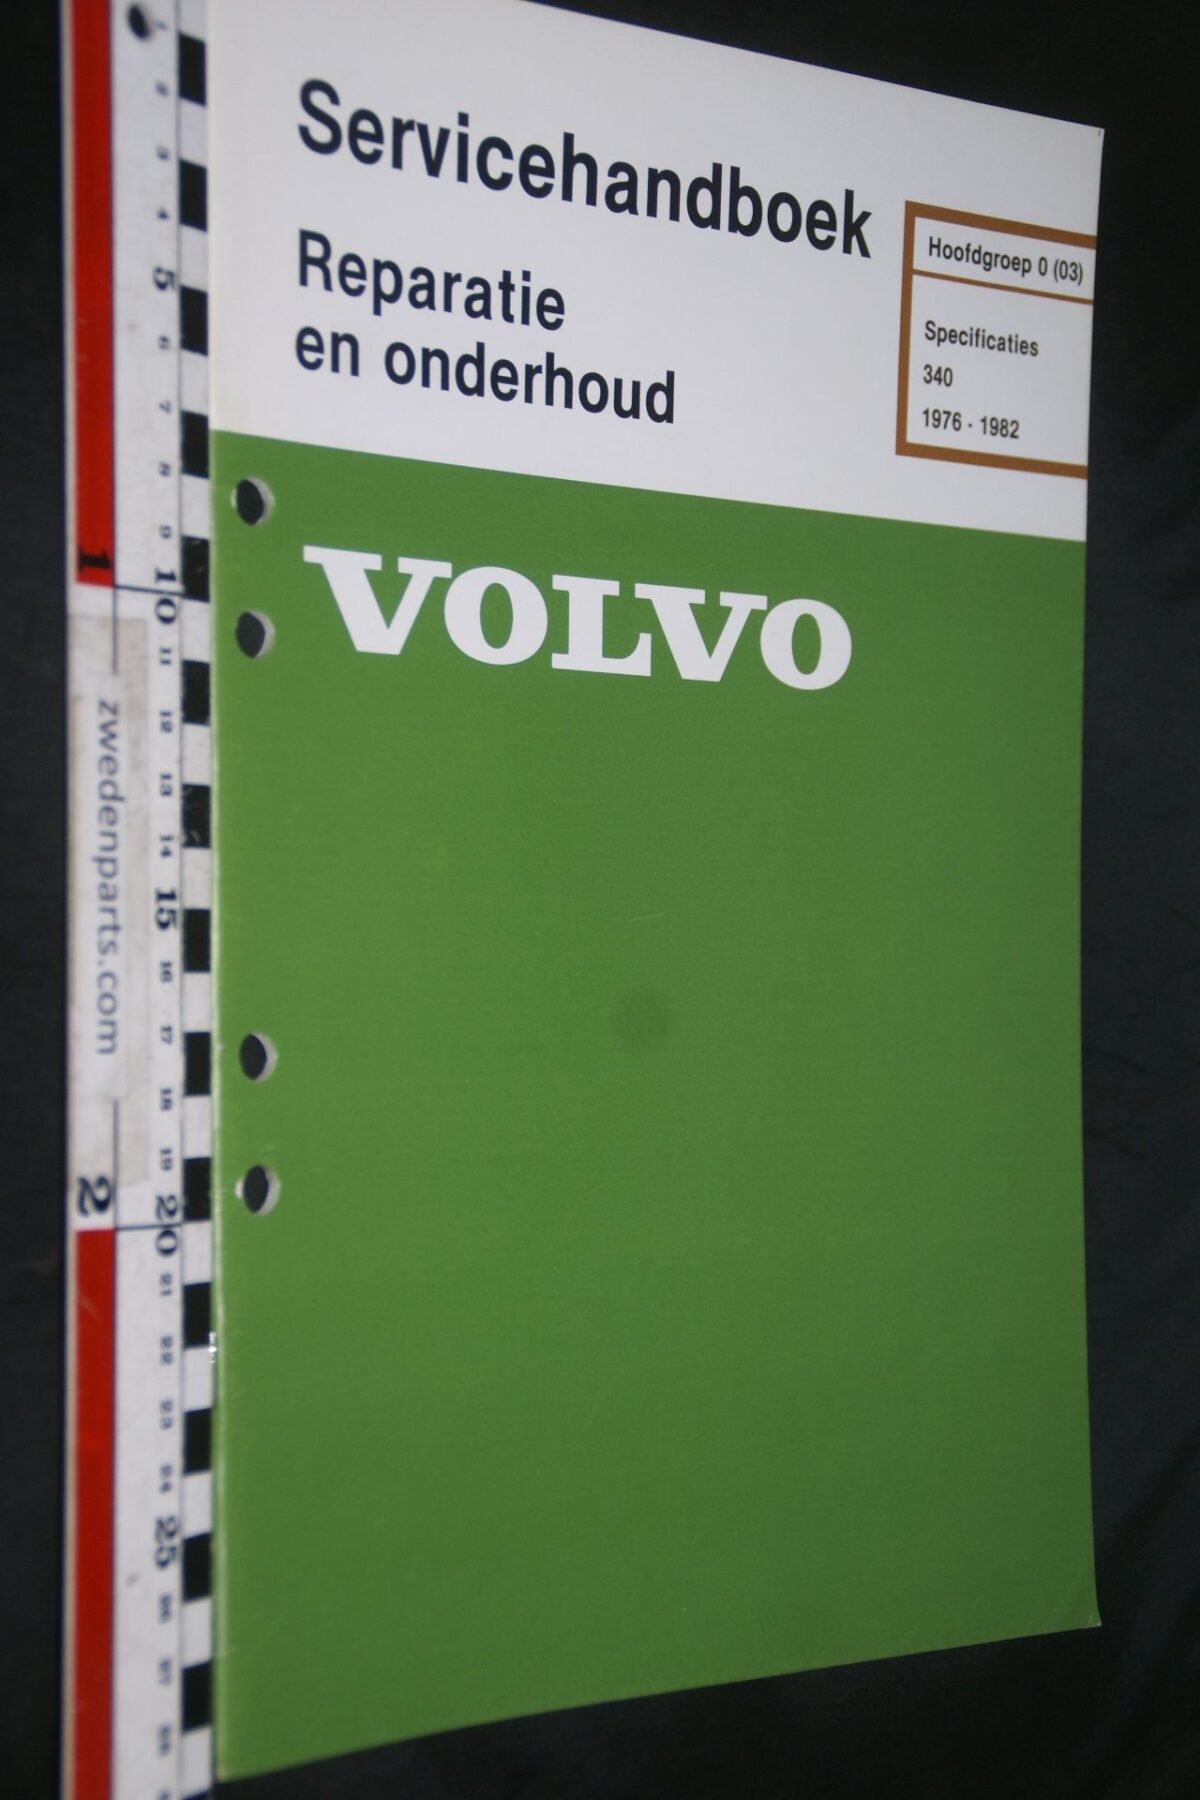 DSC07280 1981 origineel Volvo 340 servicehandboek  0(03) specificaties 1 van 700 TP 35028-3